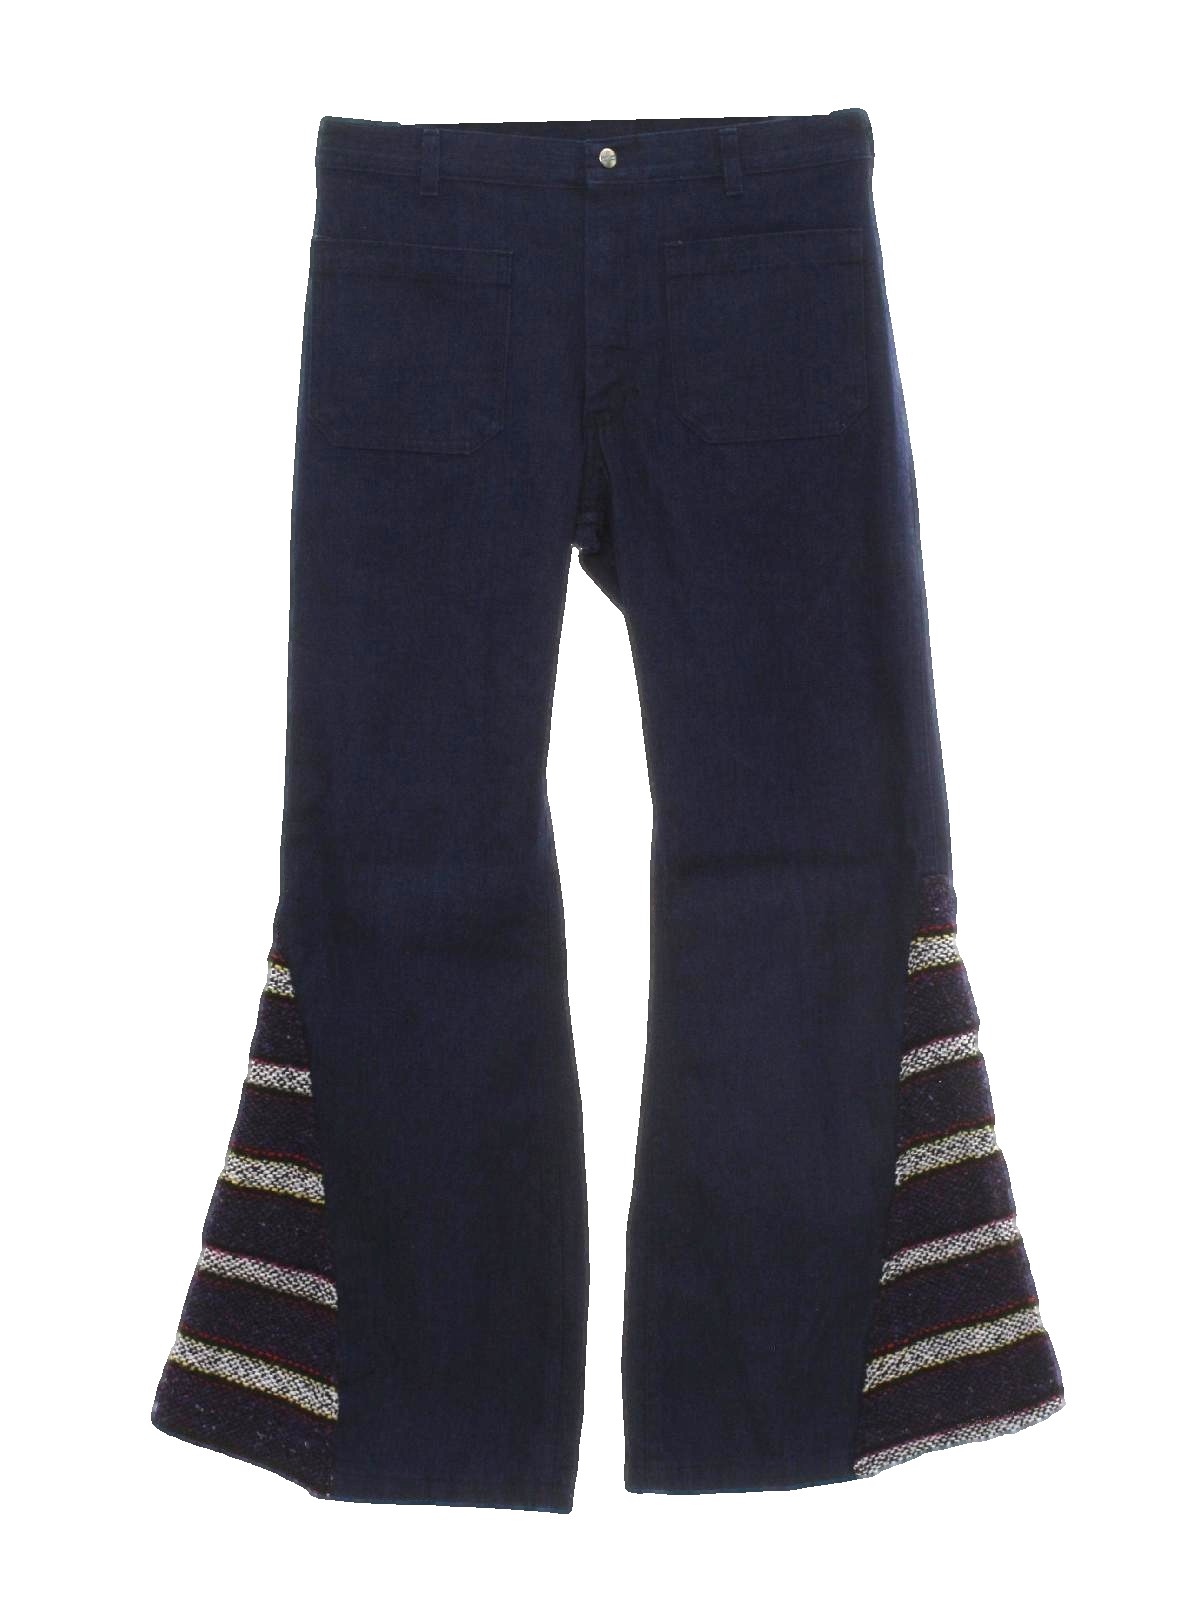 Seafarer 1970s Vintage Bellbottom Pants: 70s style -Seafarer- Mens dark ...